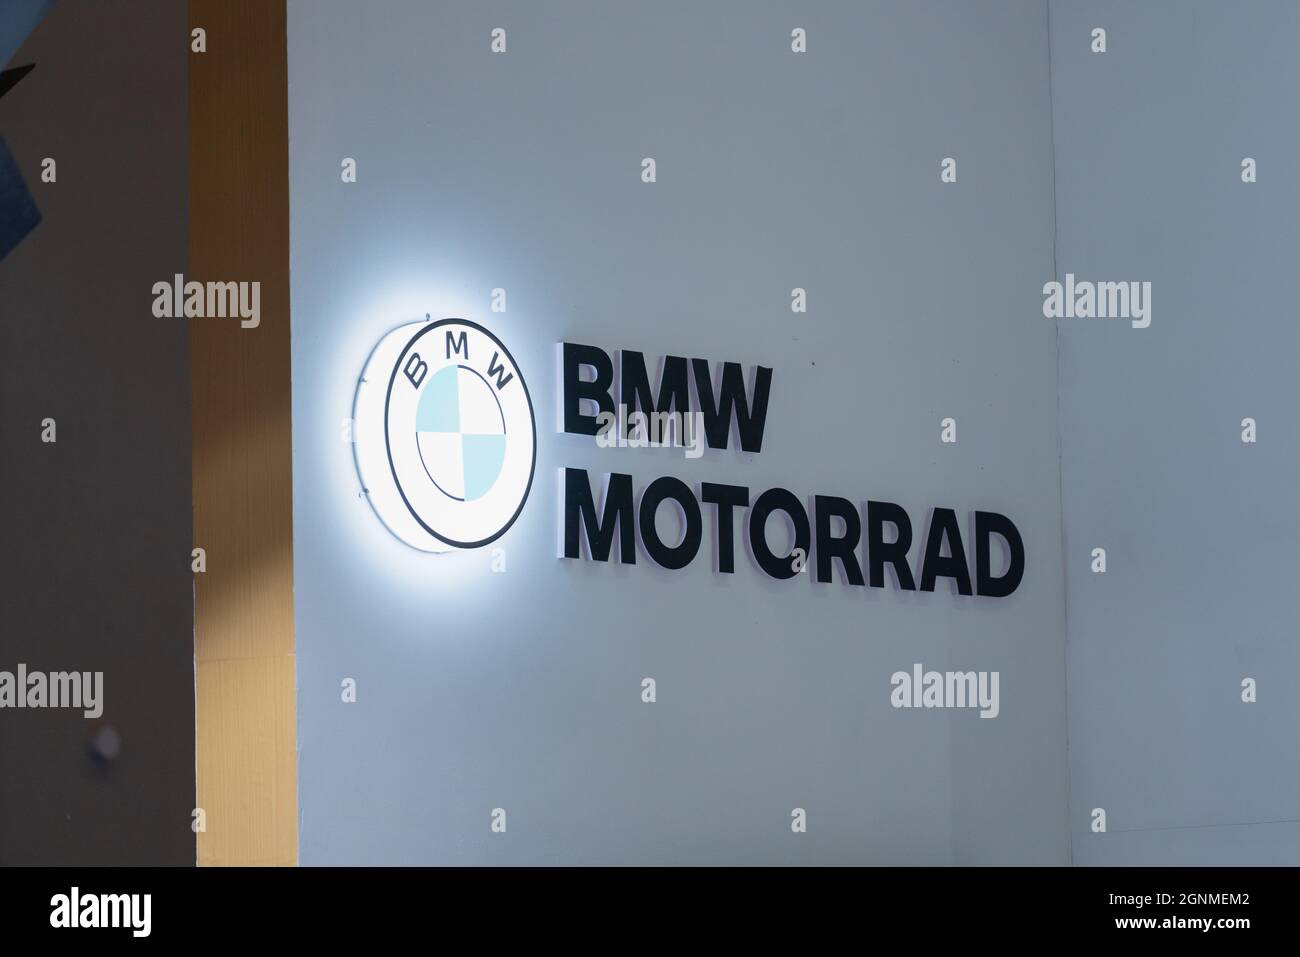 CHONGQING, CHINA - 19. Sep 2020: Das BMW Motorradunternehmen Logo auf einer Produktausstellung in einer chinesischen internationalen motorradmesse Stockfoto